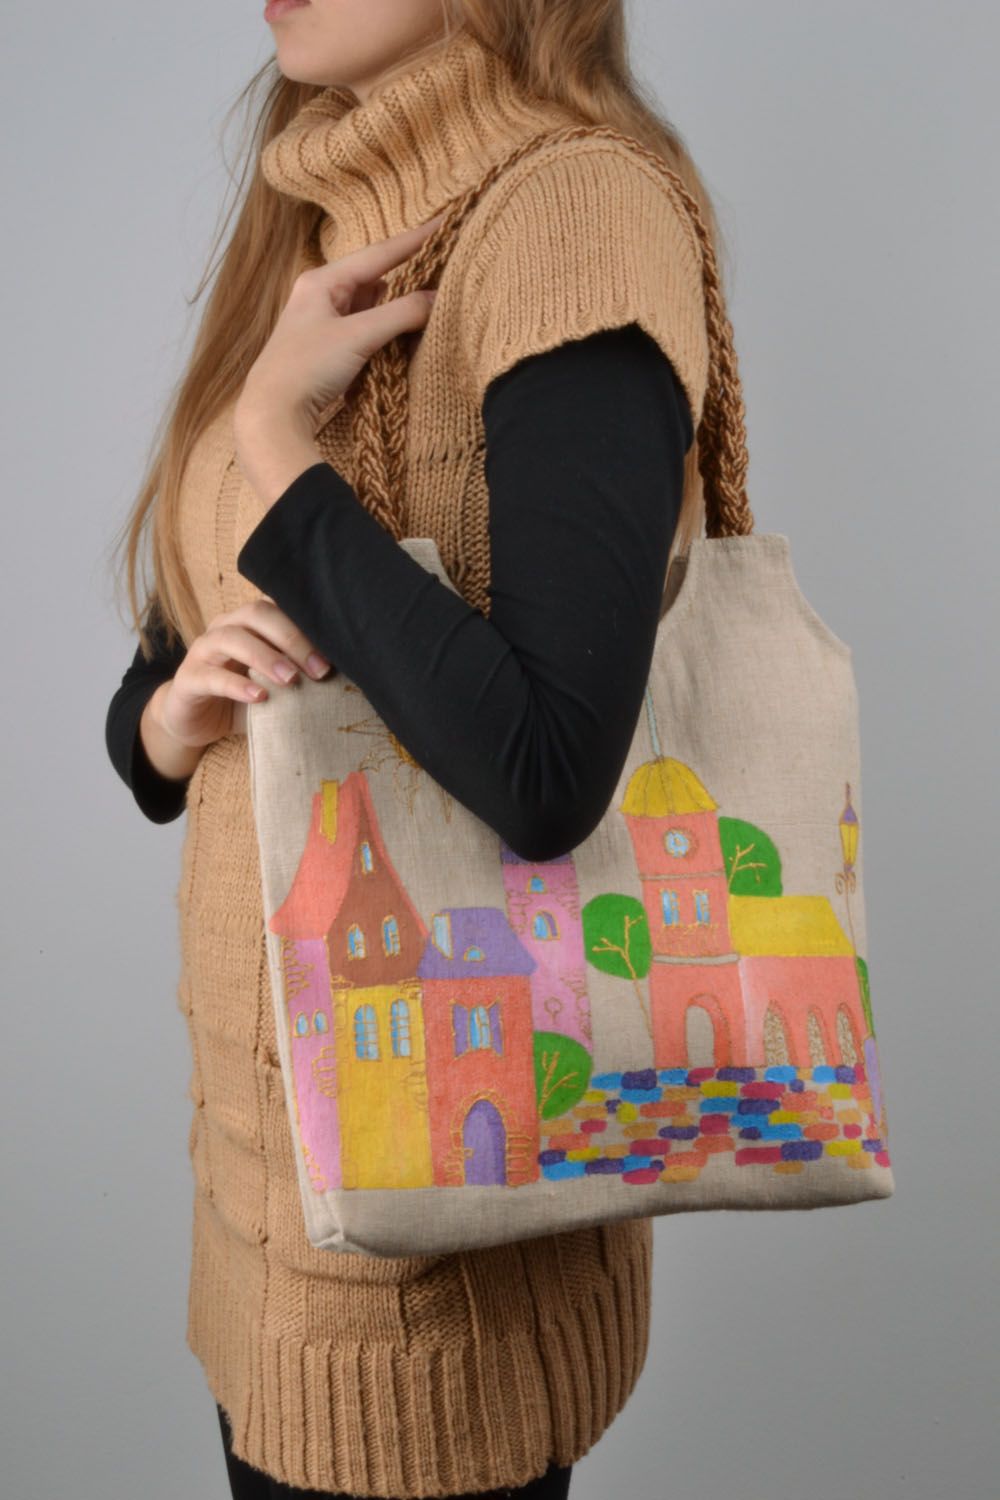 Текстильная сумка в эко-стиле фото 1